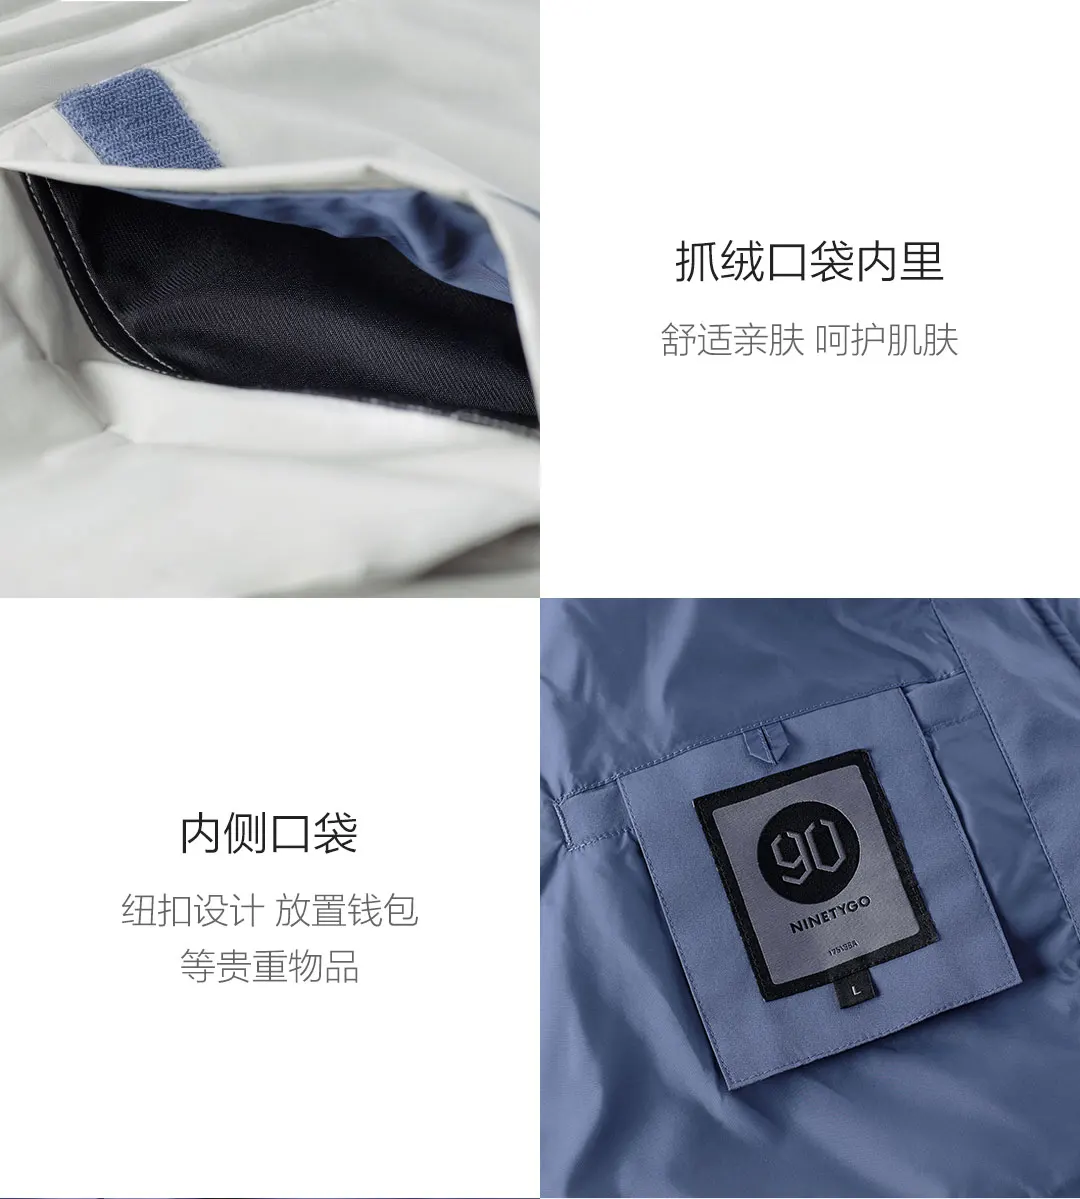 Xiaomi повседневный мужской пуховик с цветным соединением теплый с капюшоном белый пуховик на утином пуху пальто для зимы водонепроницаемый Рабочий стиль